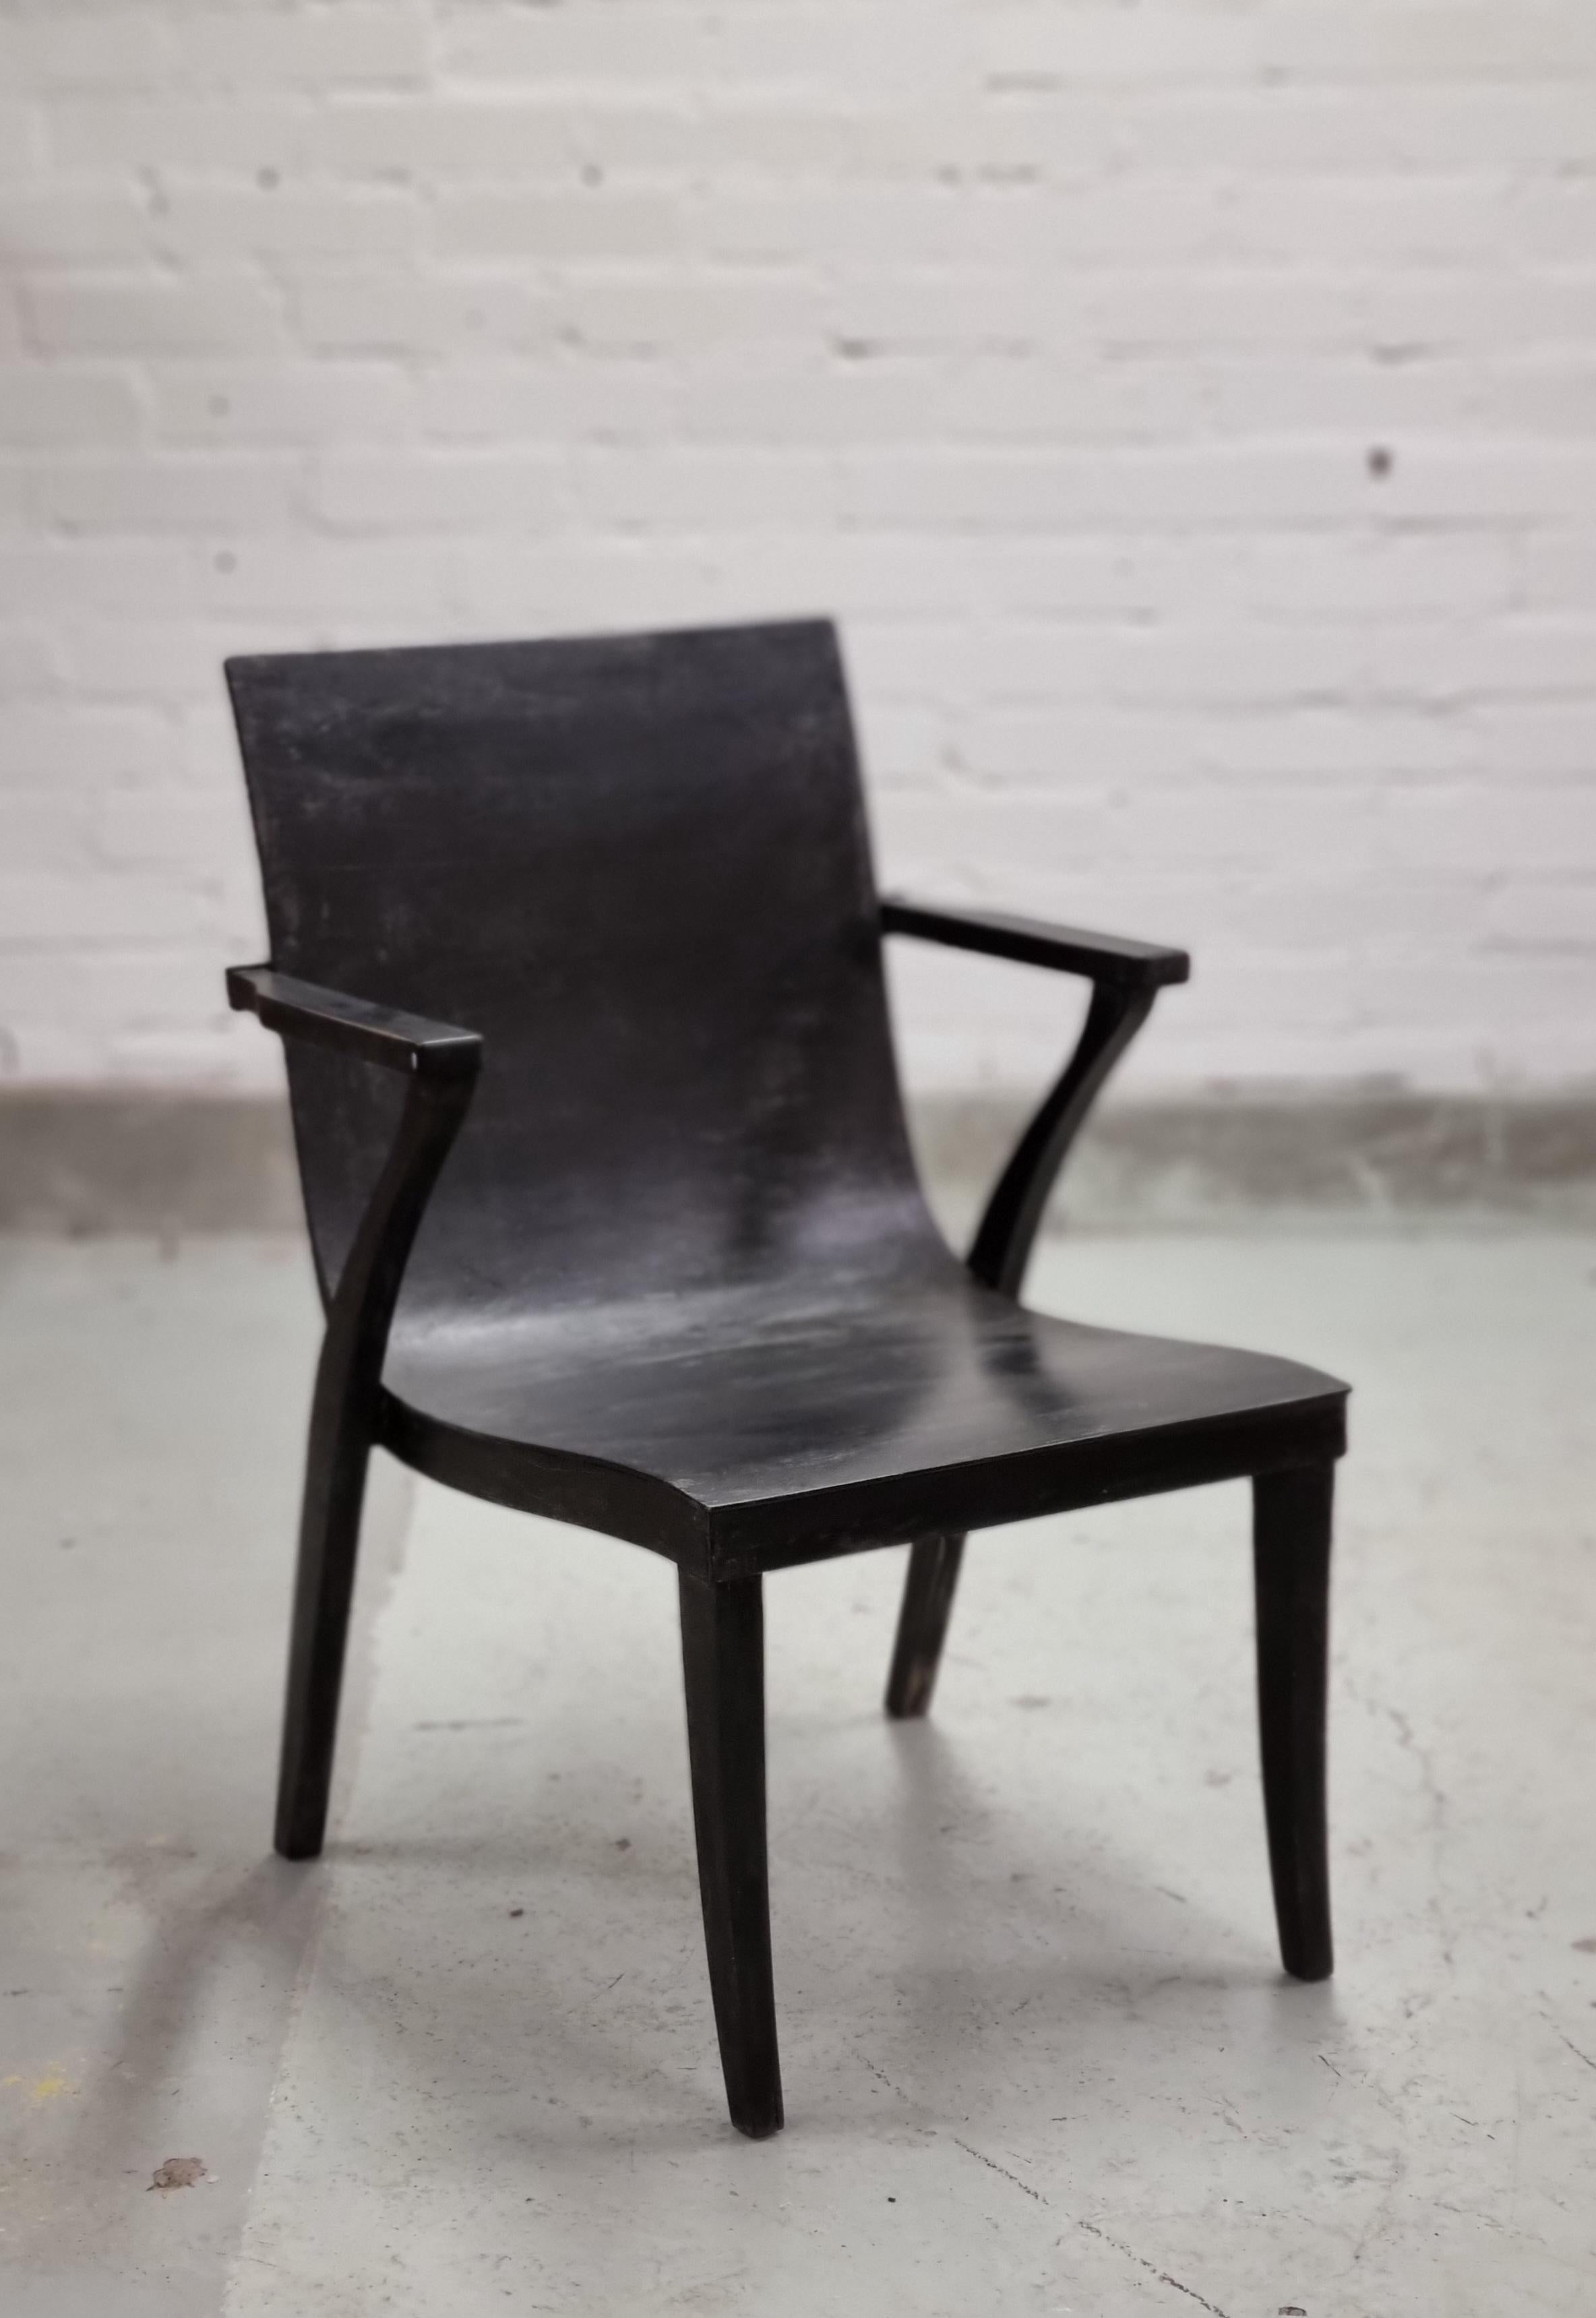 Ce fauteuil extrêmement rare en bouleau massif et en contreplaqué de bouleau cintré a été conçu par l'architecte finlandais Alvar Aalto et Otto Korhonen, qui était l'un des ébénistes et propriétaires d'usine finlandais les plus connus.  Otto a fondé